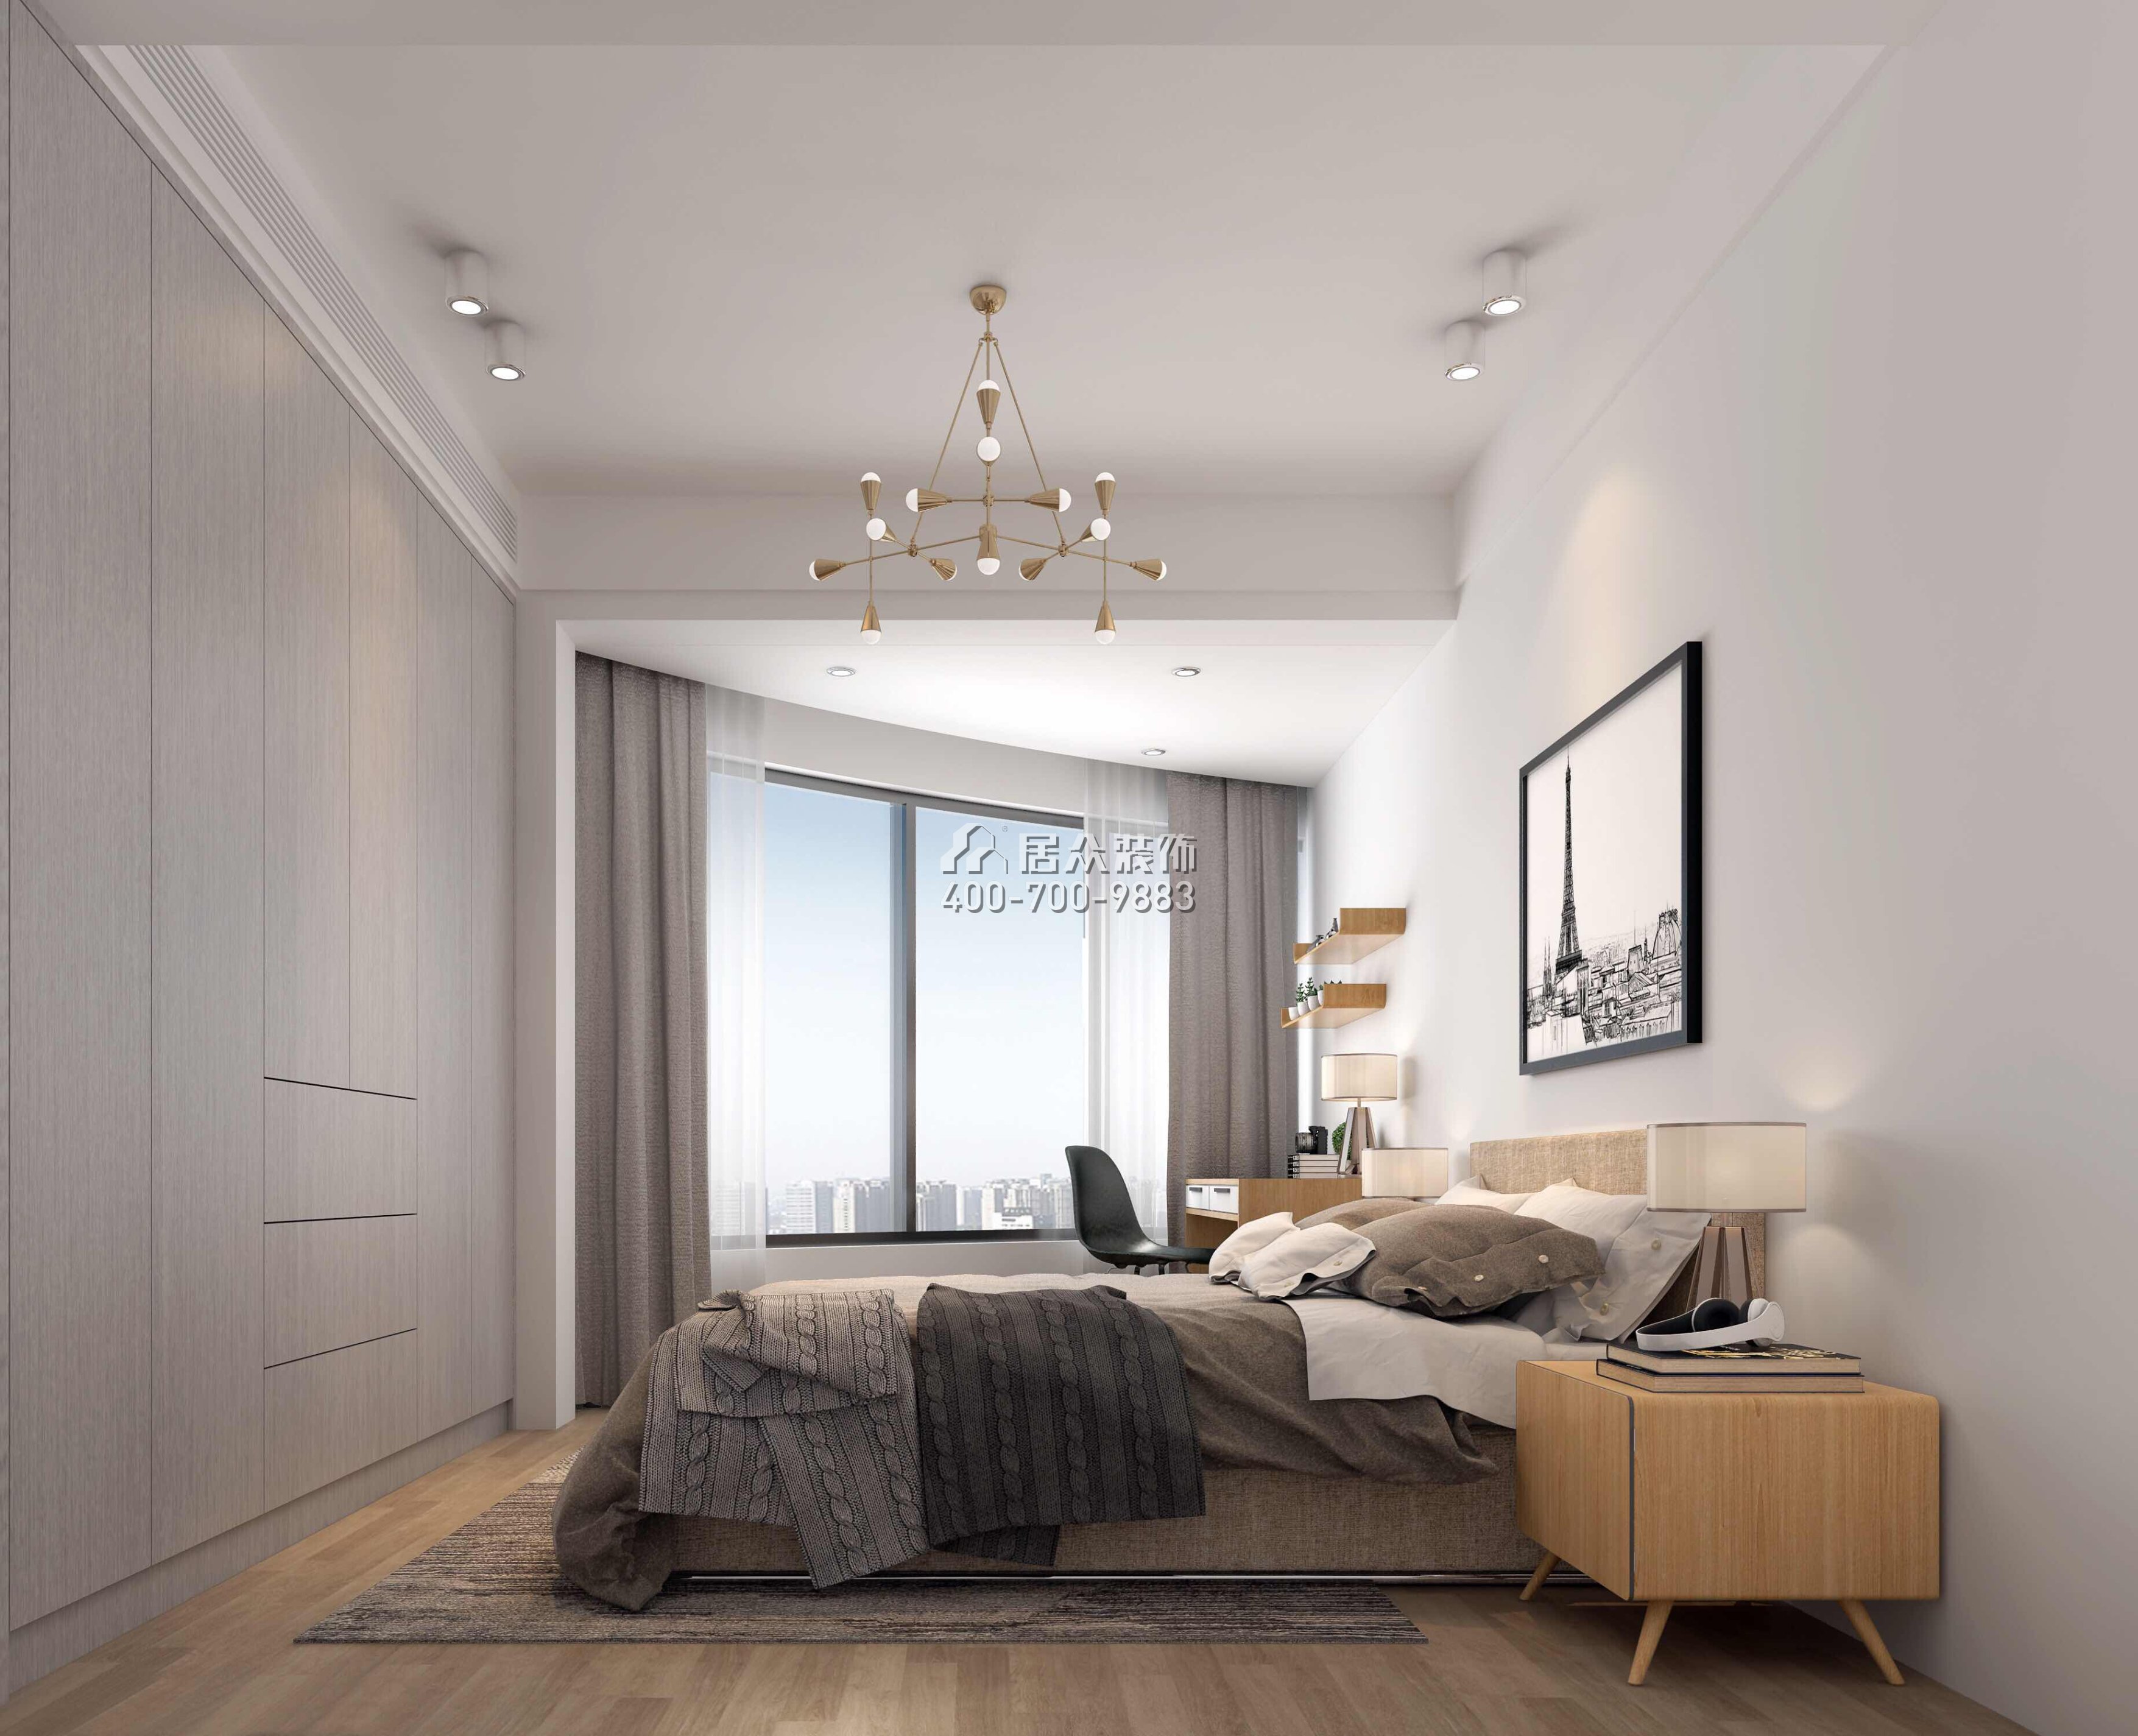 招商海月二期89平方米现代简约风格平层户型卧室装修效果图